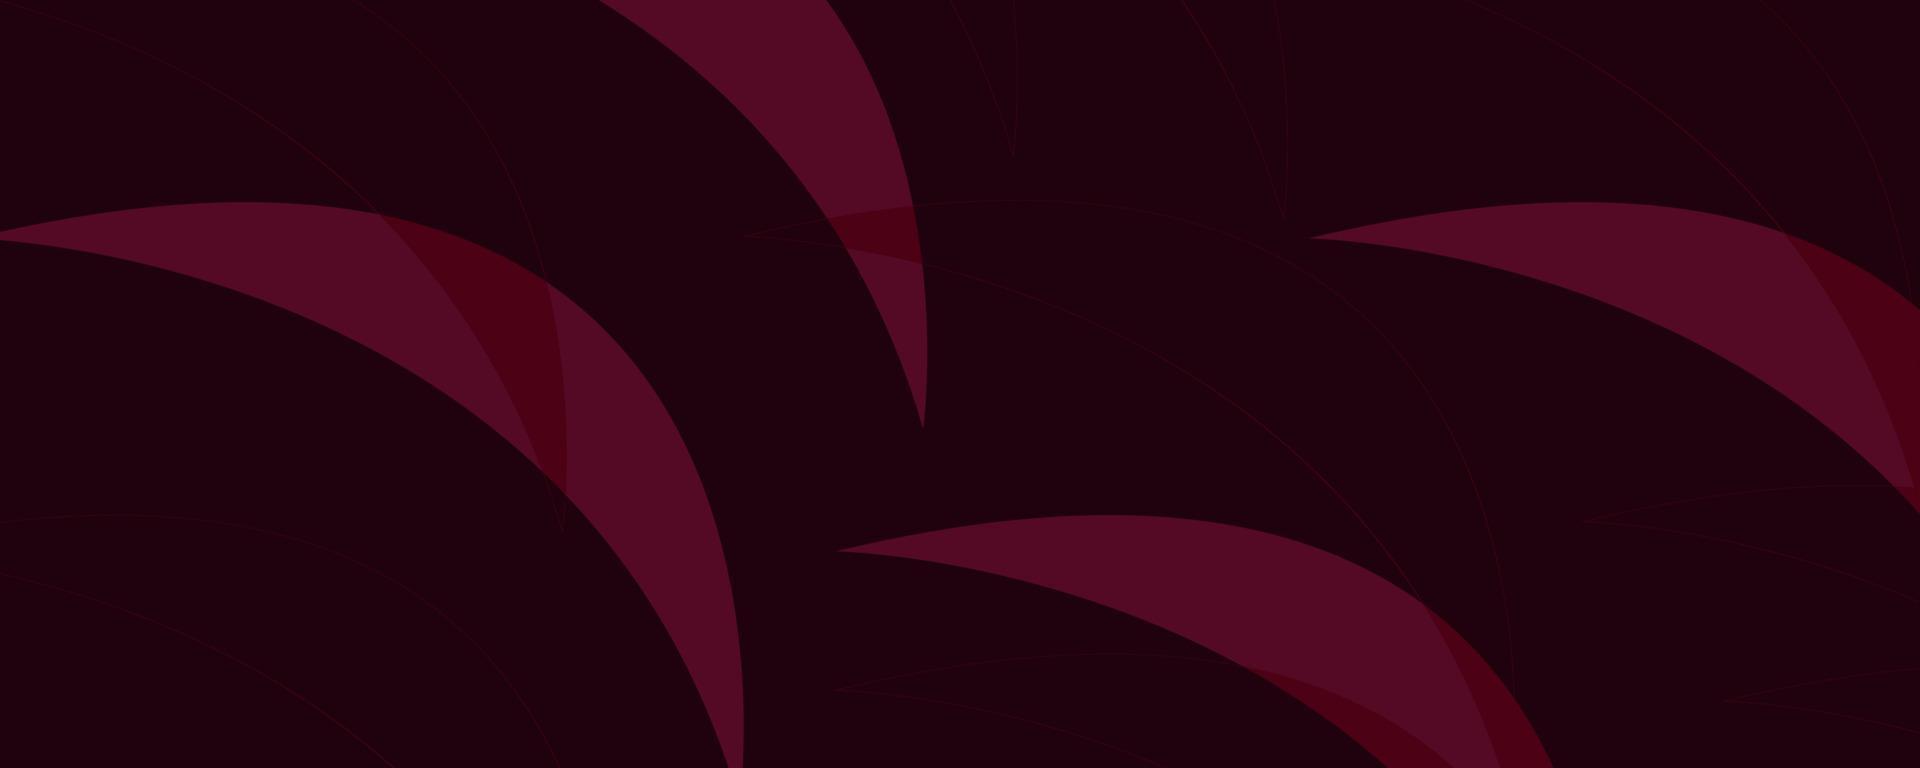 abstrakte Blätter Hintergrund mit Halbkreisen. rosa, lebhaft magenta. Vektorvorlage für Geschichten, Cover vektor